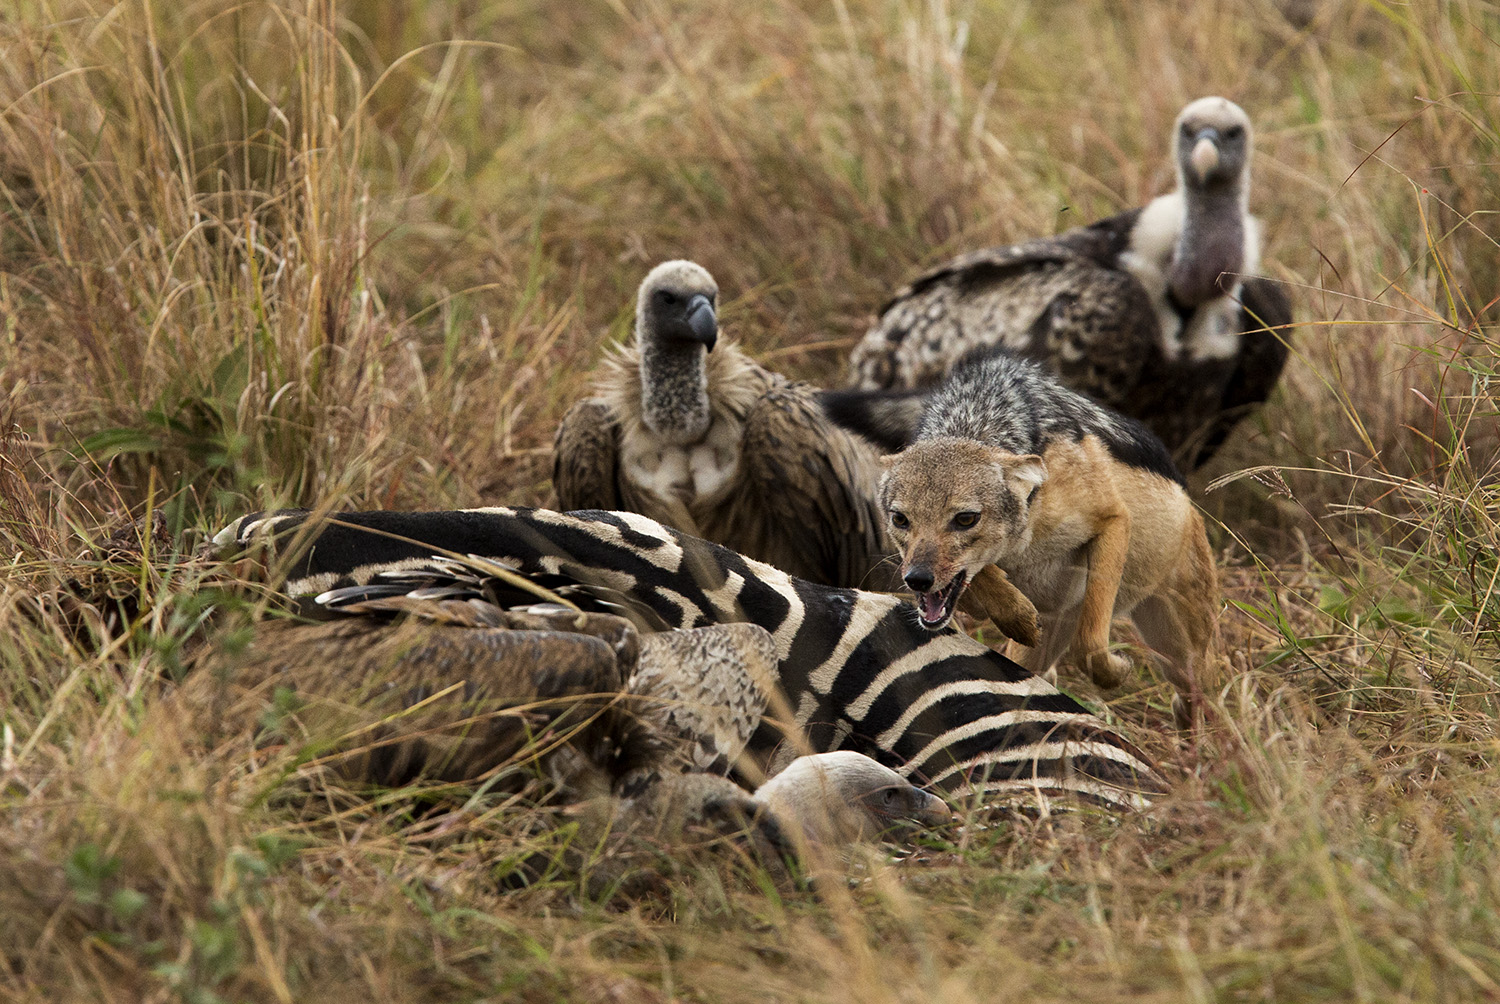 Jackal versus vulture over a zebra carcass